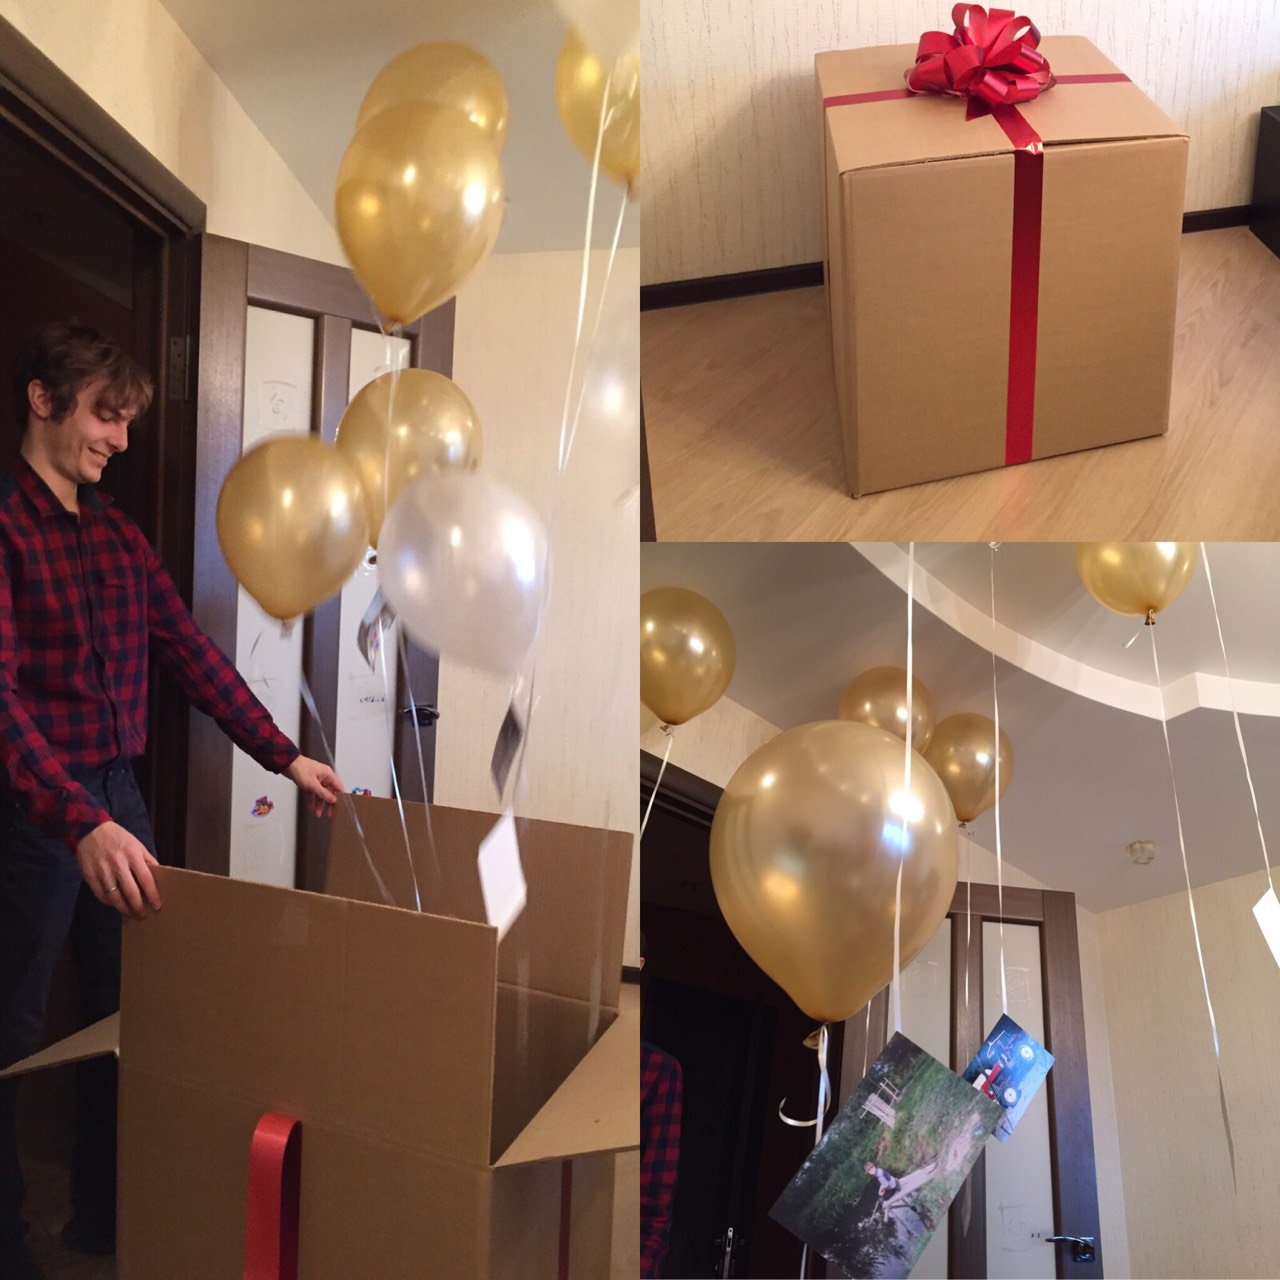 Неожиданный подарок сюрприз. Сюрприз на день рождения. Огромная коробка для подарка с шарами. Сюрприз с шарами на день рождения. Большая подарочная коробка для шаров.